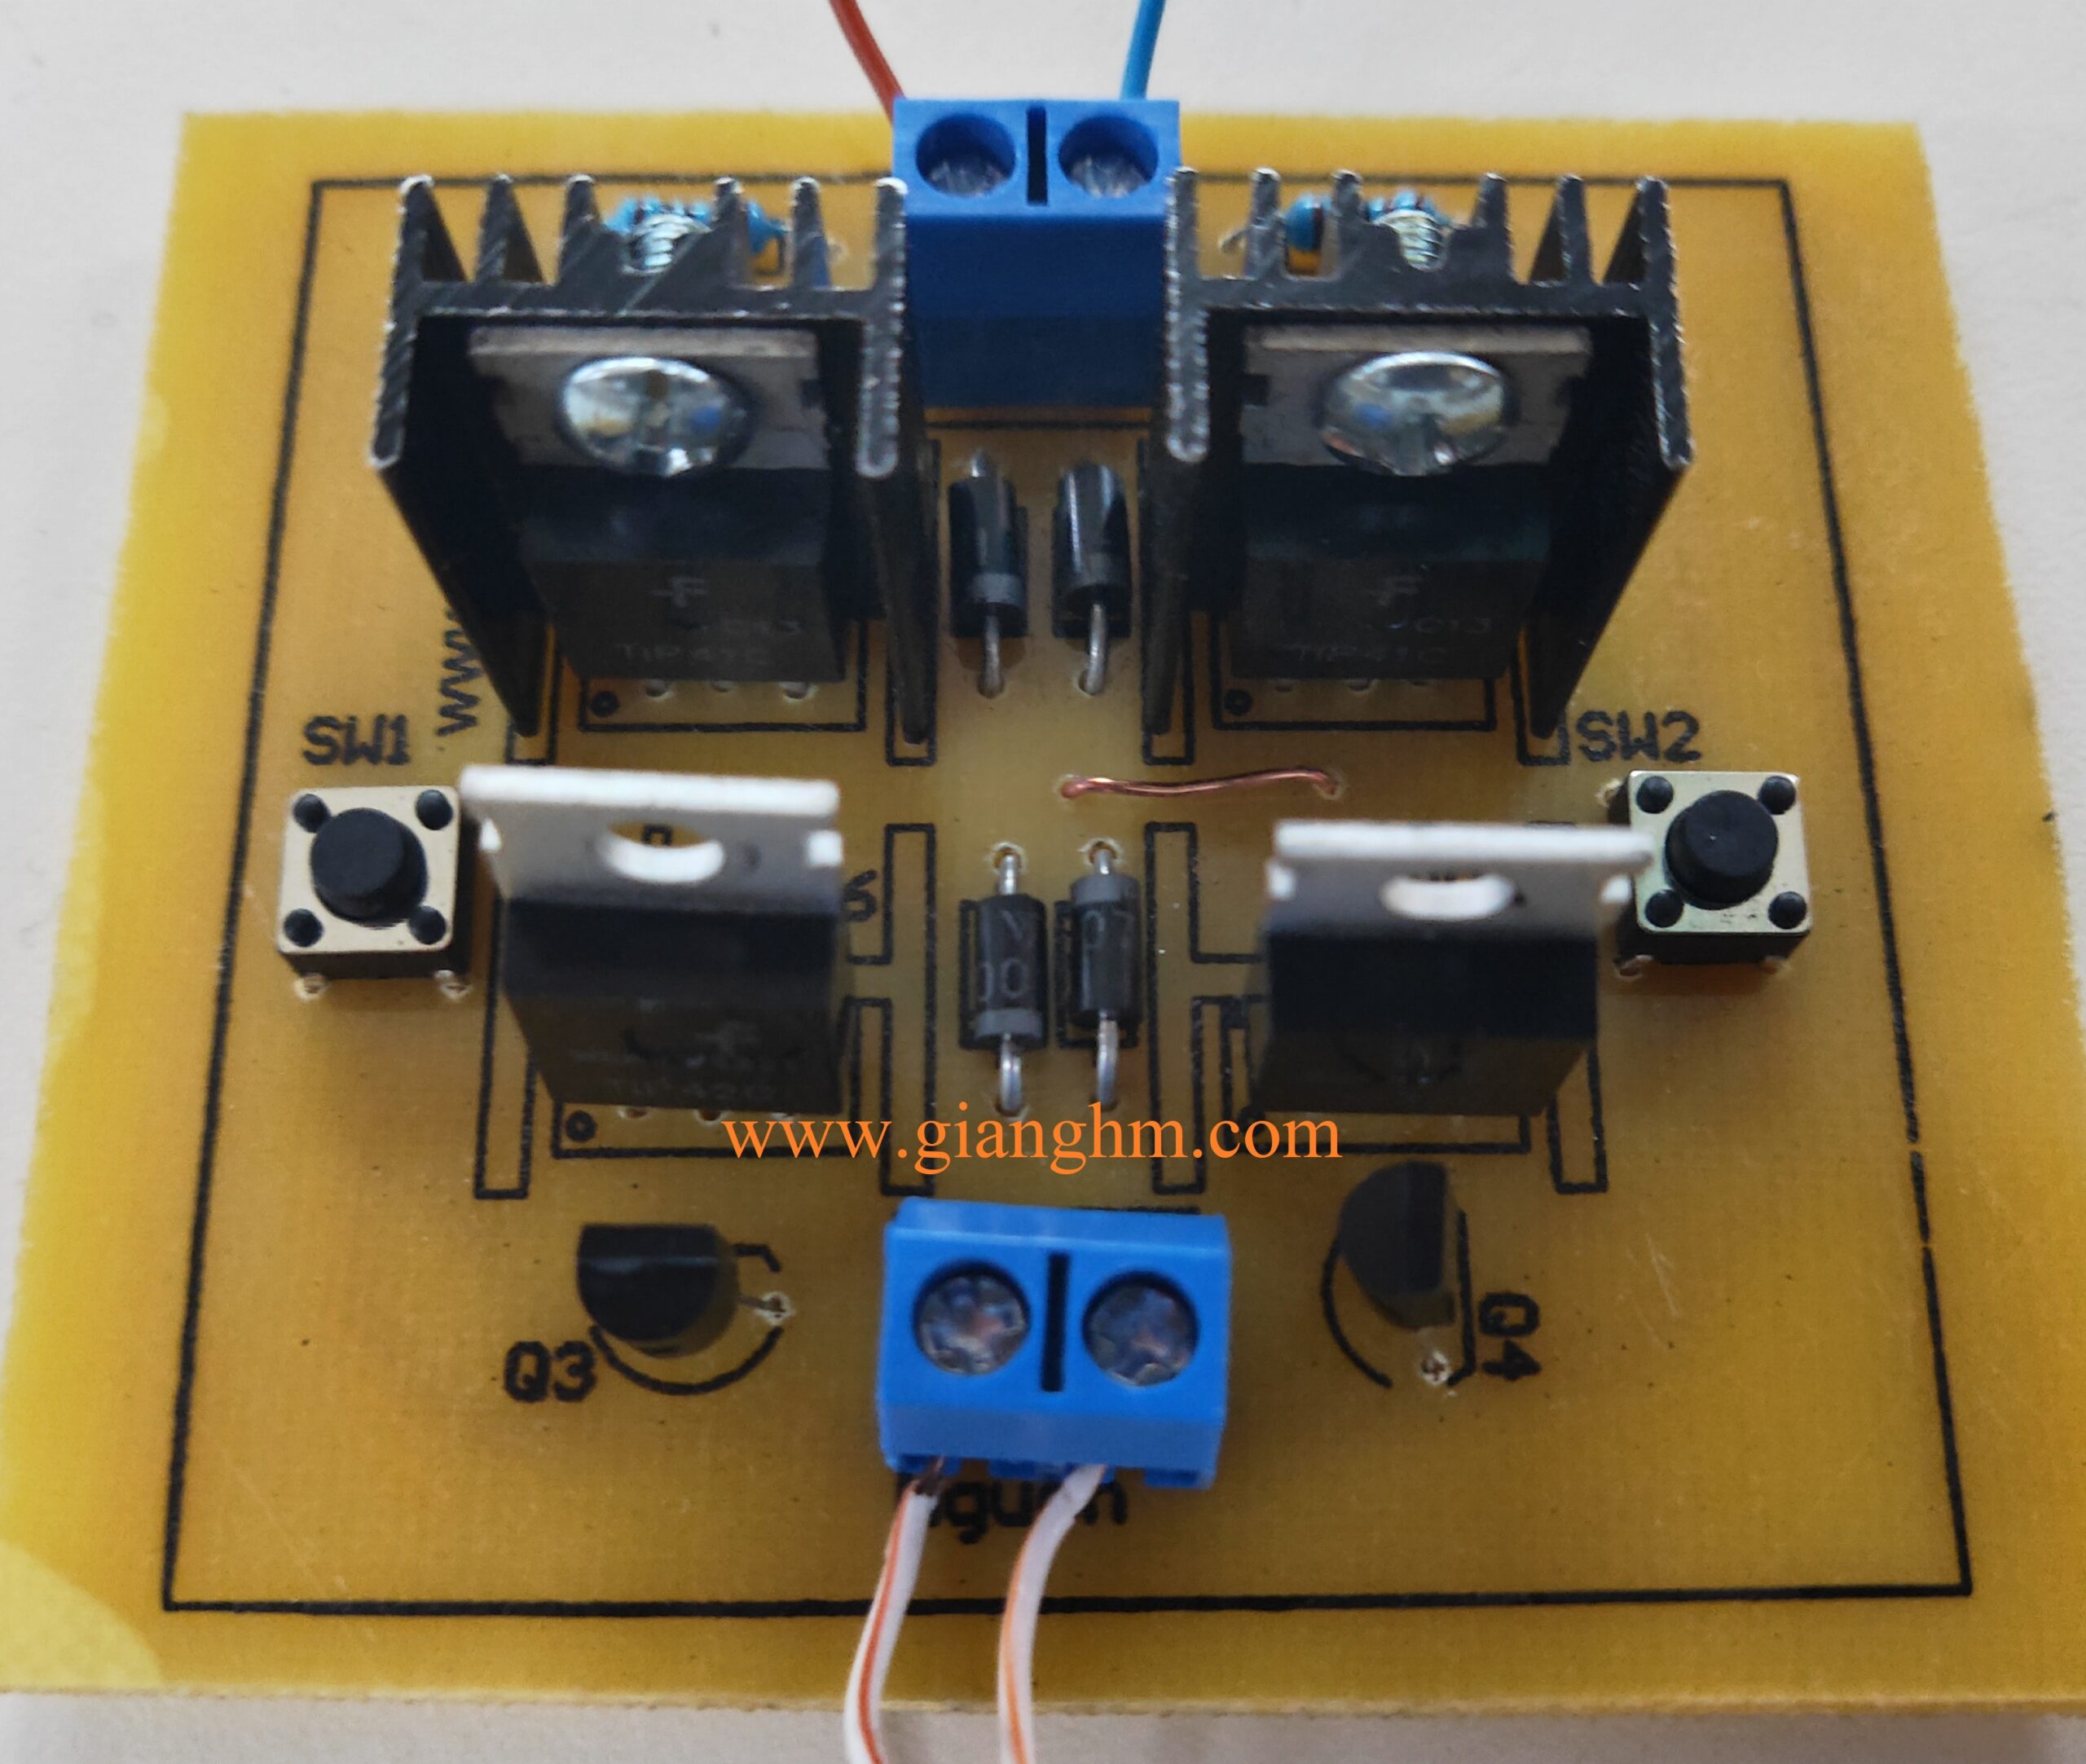 mạch đảo chiều động cơ dùng transistor